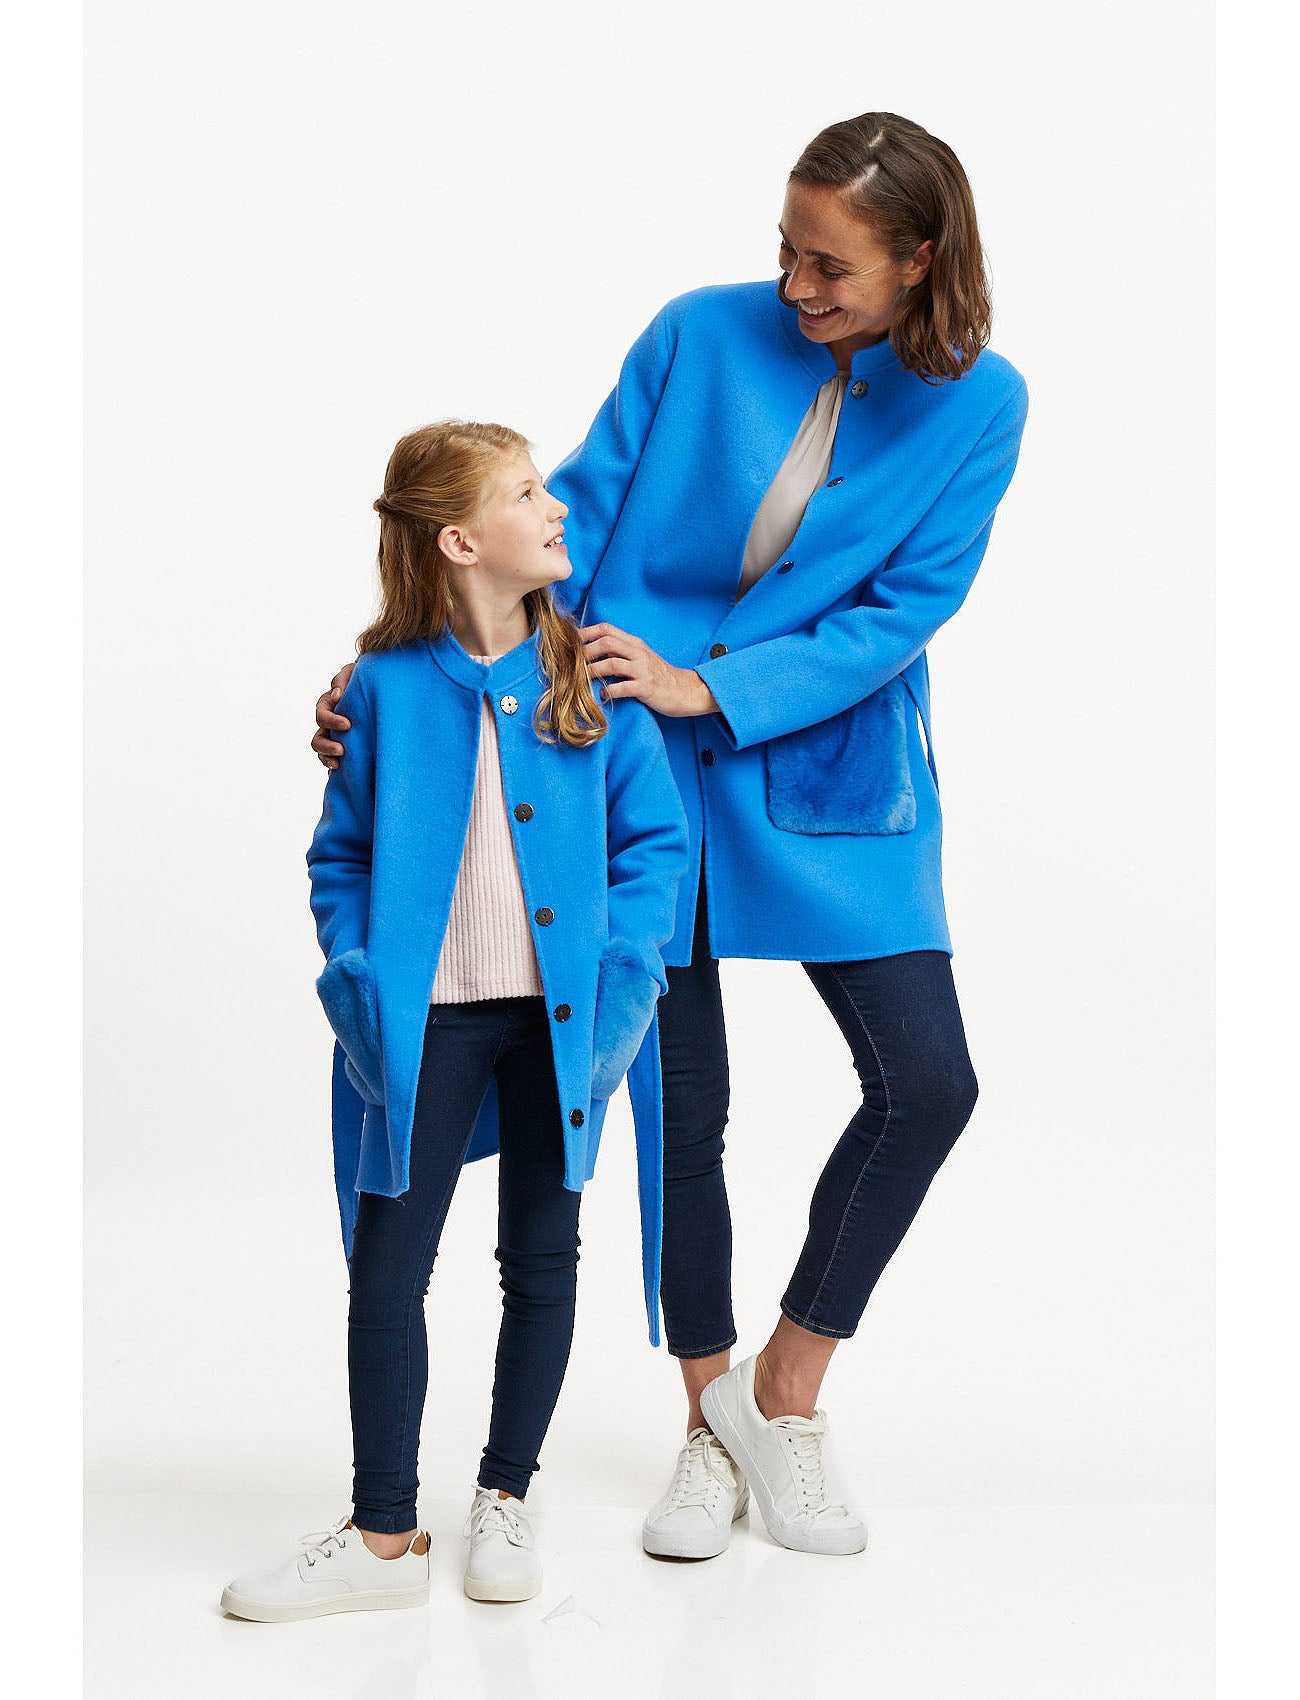 Kinder Wolljacke mit aufgesetzten Felltaschen - blau